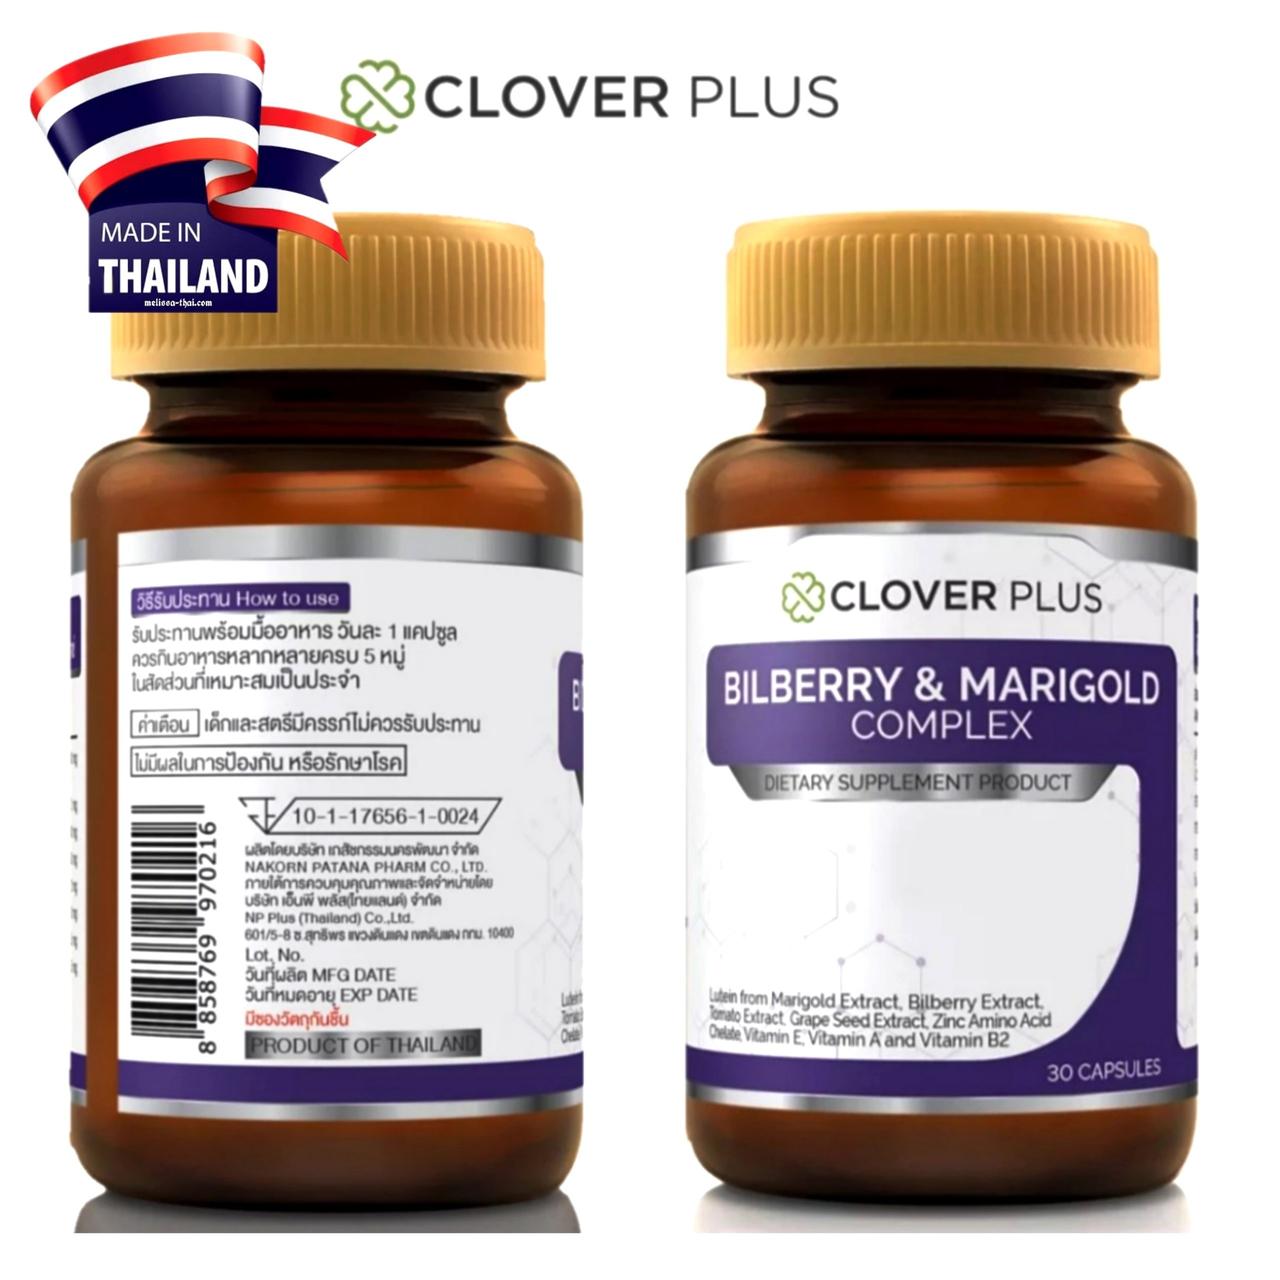 Препарат для улучшения зрения и здоровья глаз Clover Plus Bilberry & Marigold Complex, 30 капсул. Таиланд